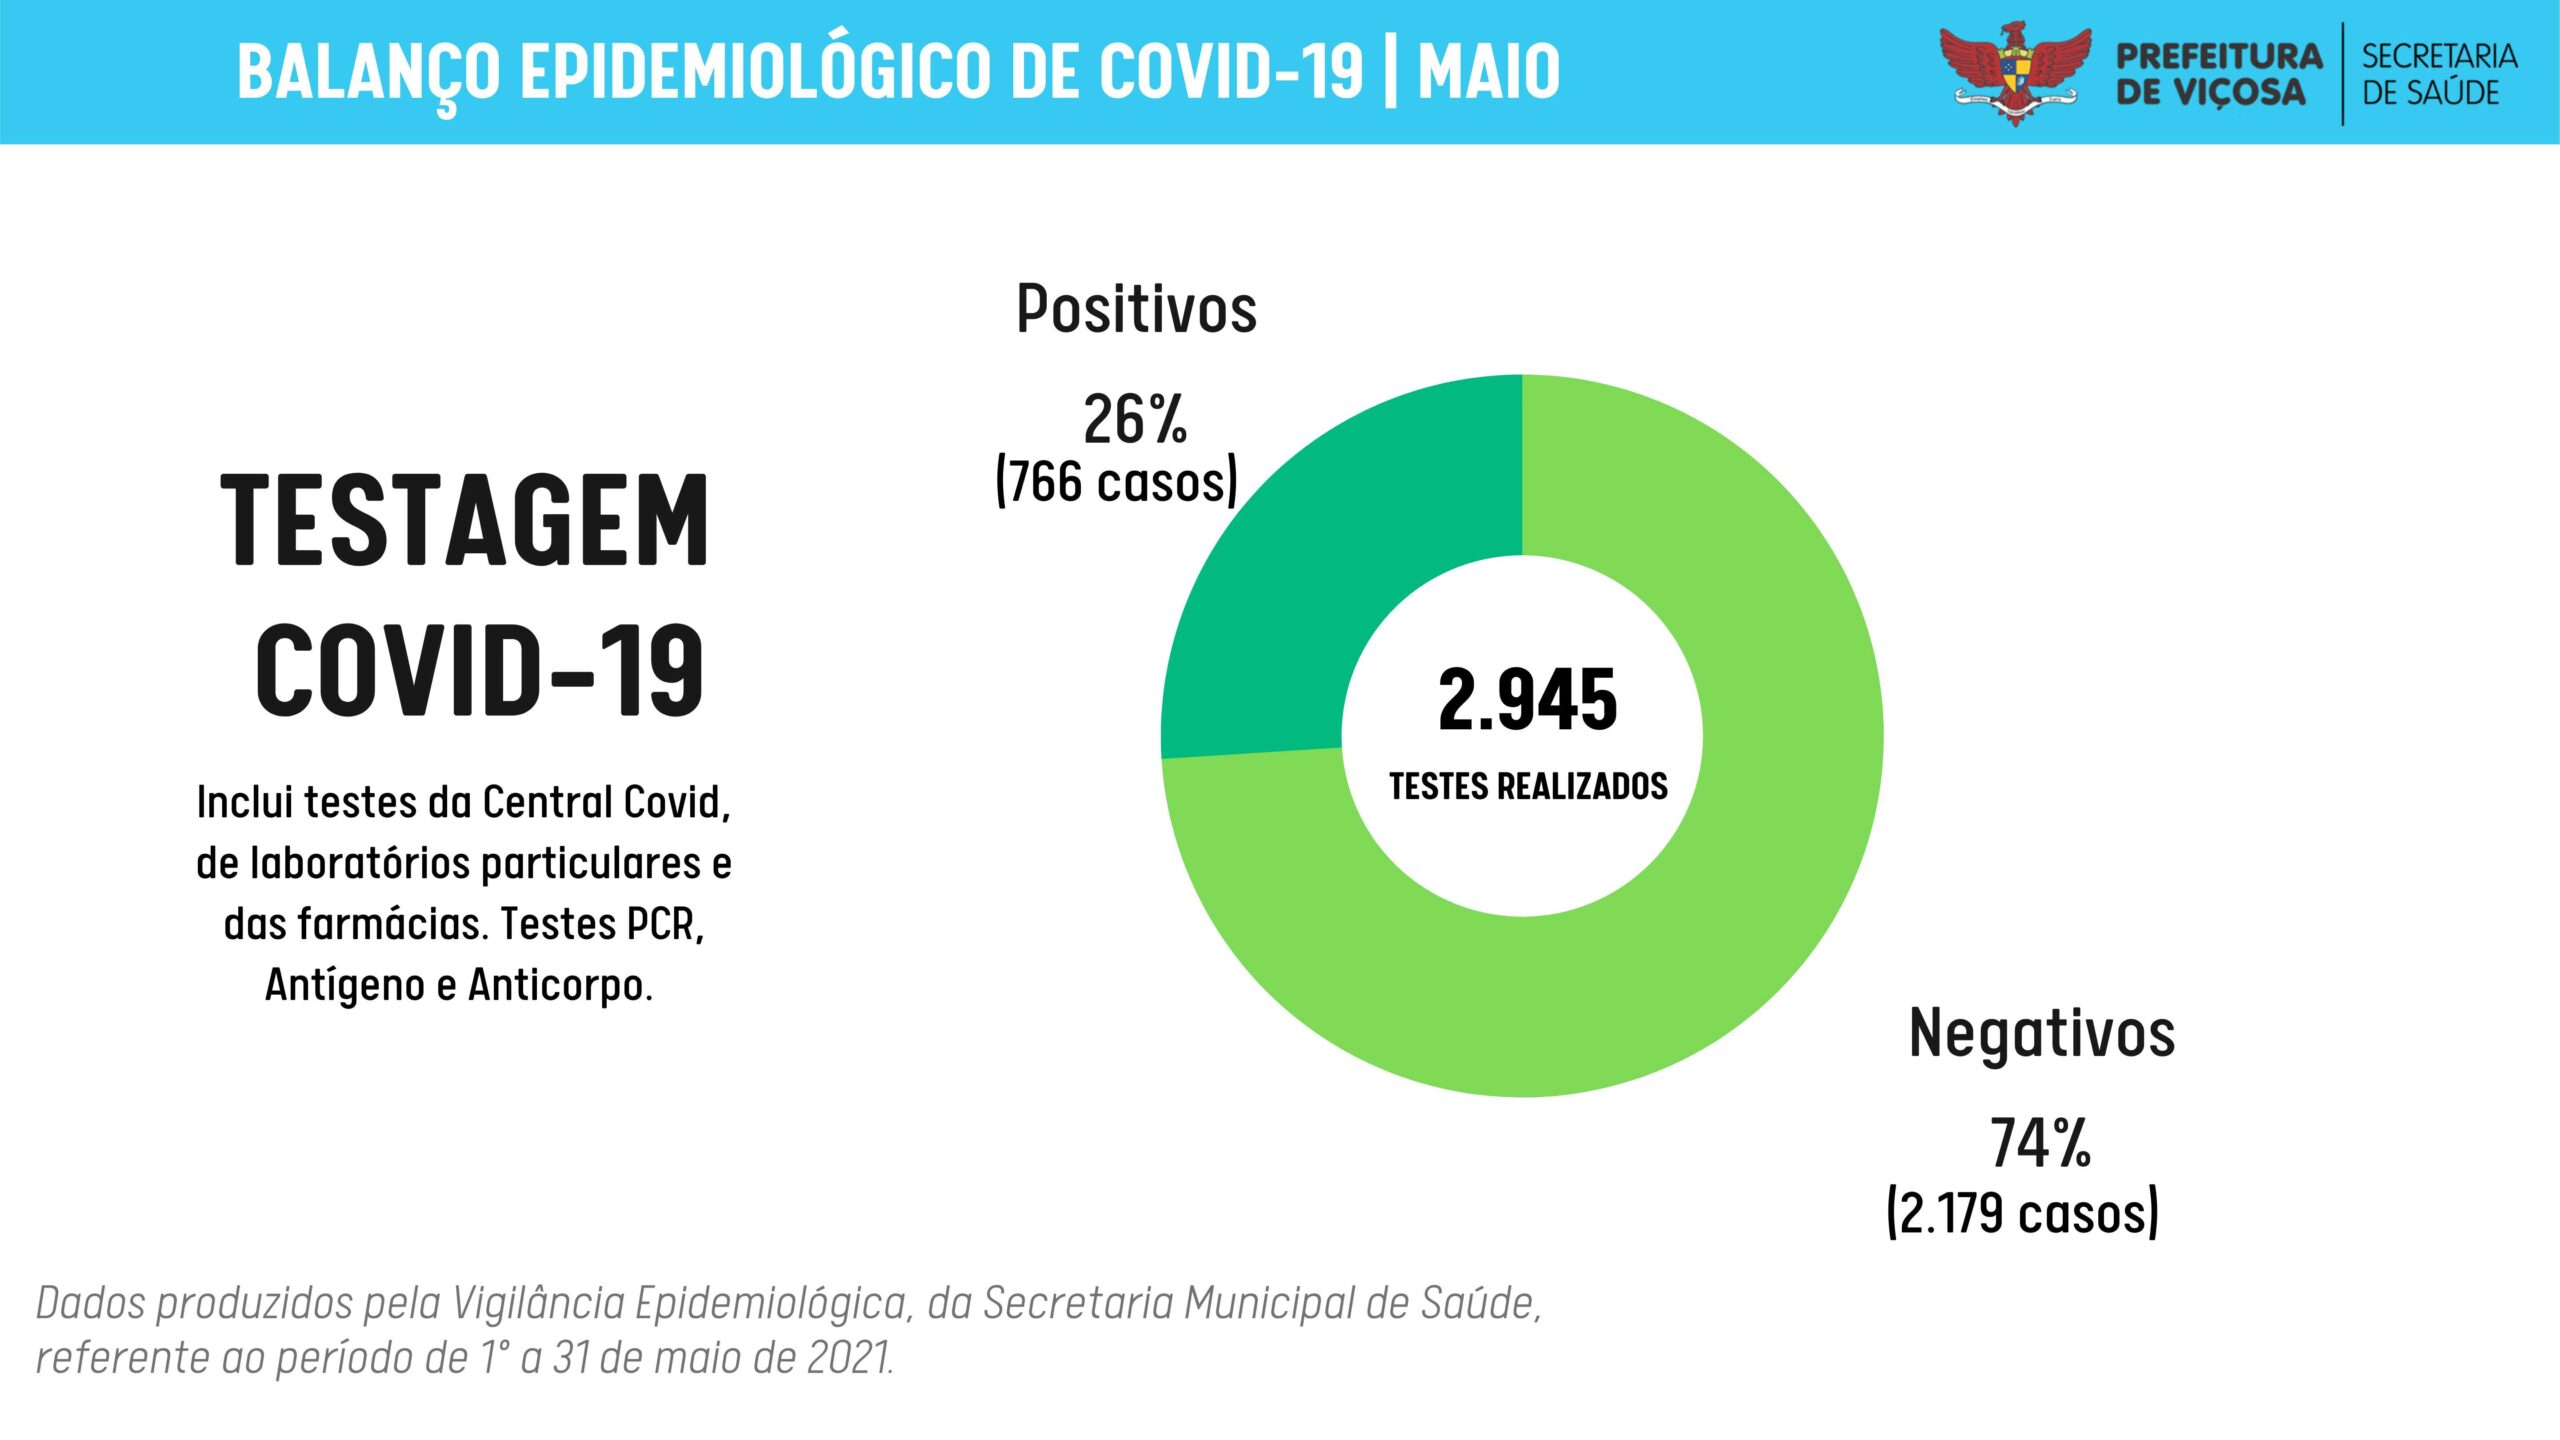 Viçosa: 46% dos óbitos pela Covid-19 em maio foram de pessoas entre 61 e 70 anos